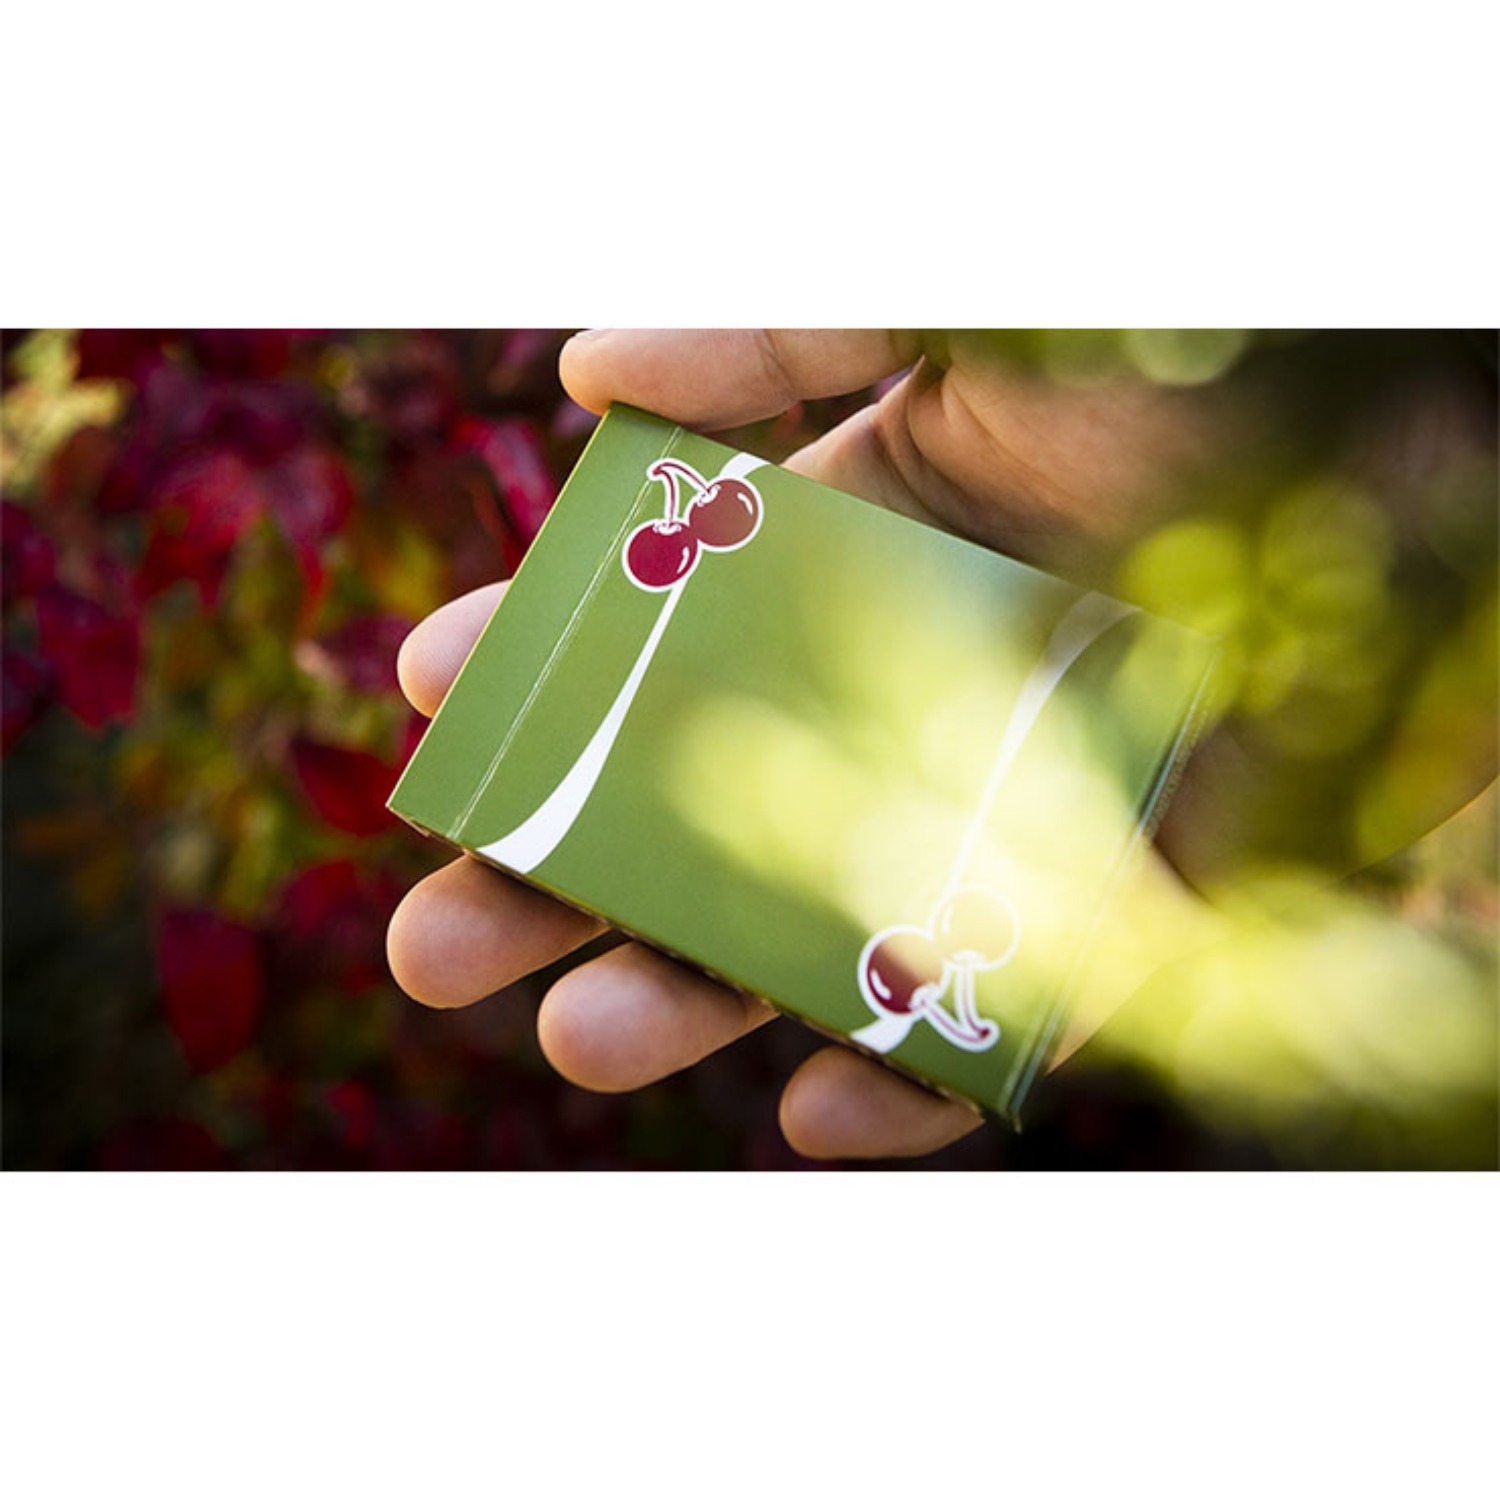 [체리카지노/ 사하라그린]Cherry Casino Fremonts (Sahara Green) Playing Cards by Pure Imagination Projects